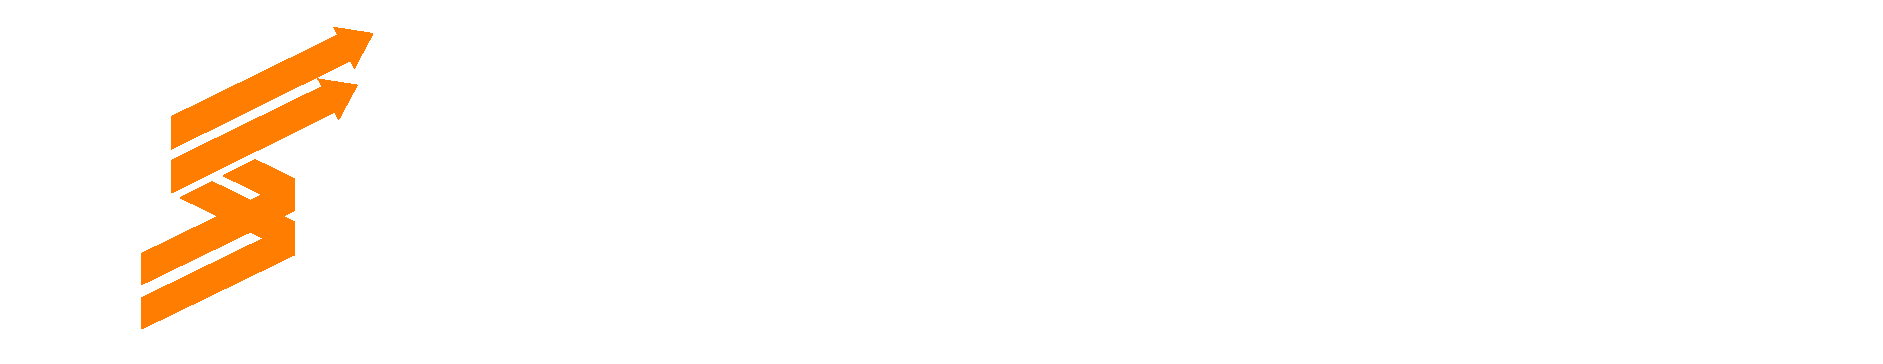 Top SEO Expertz Logo for Services